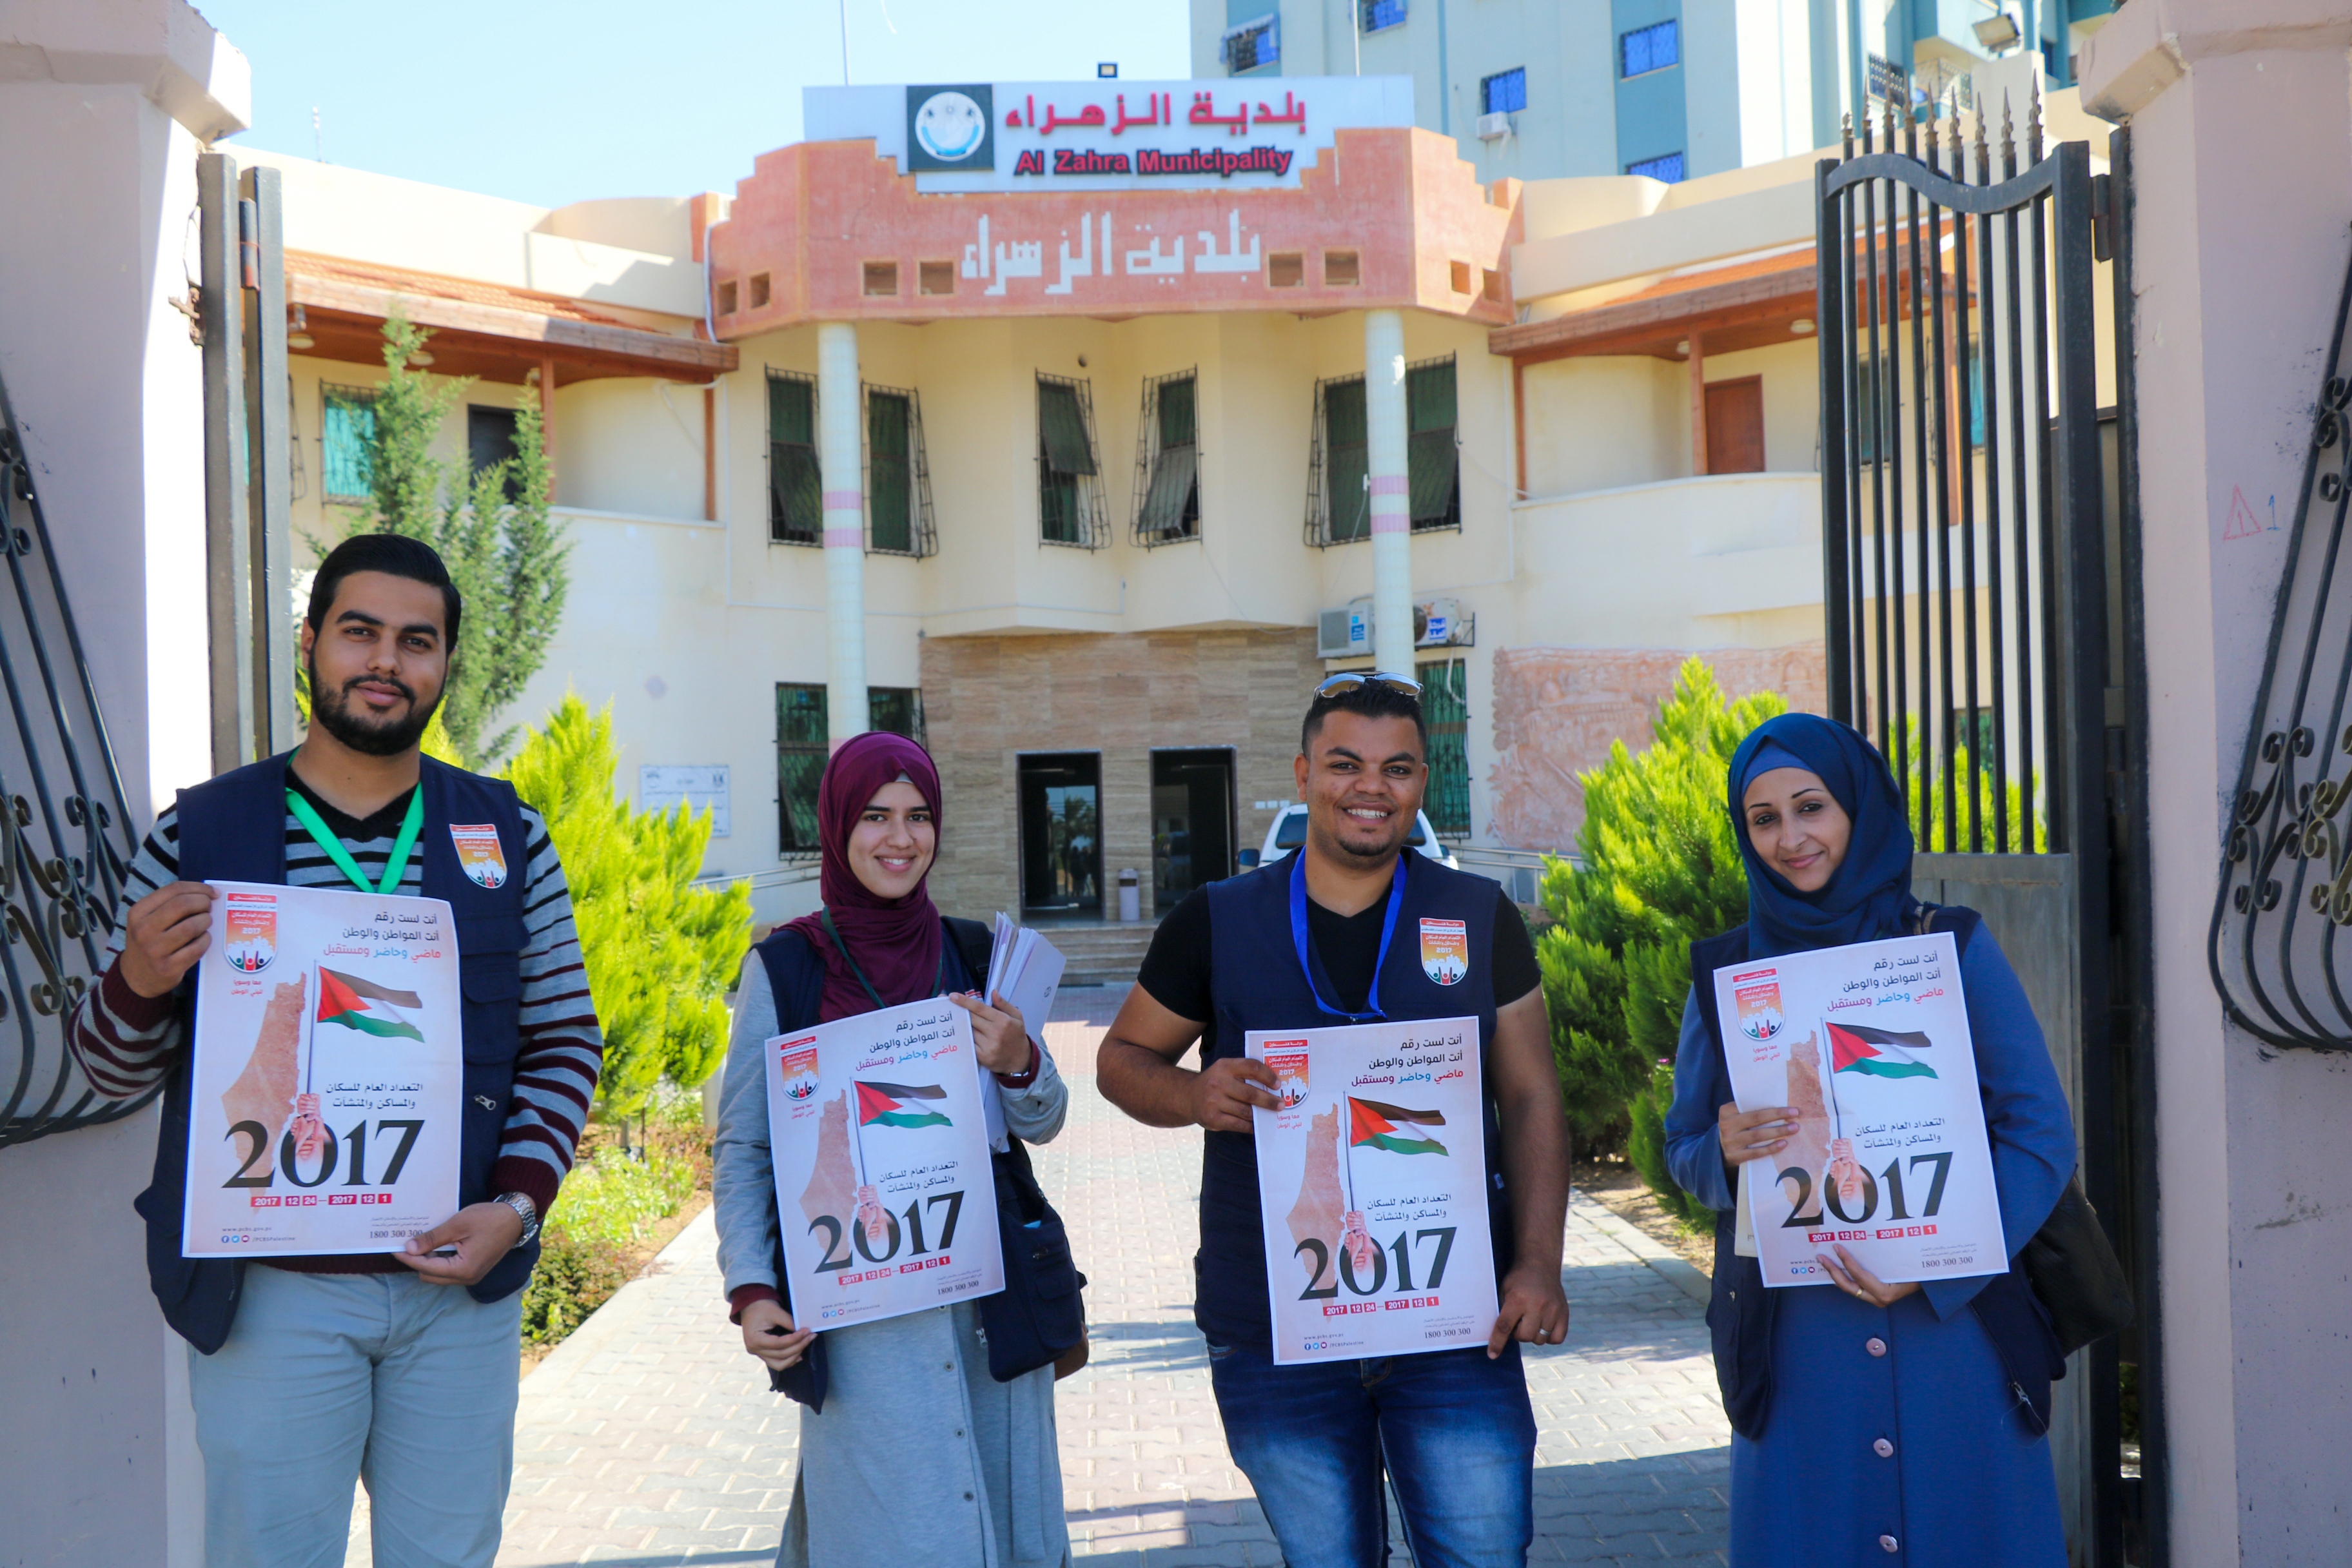 انطلاقا من بلدية الزهراء : الفريق الوطني للتعداد في  ينفذ حملة إعلامية حول التعداد العام 2017